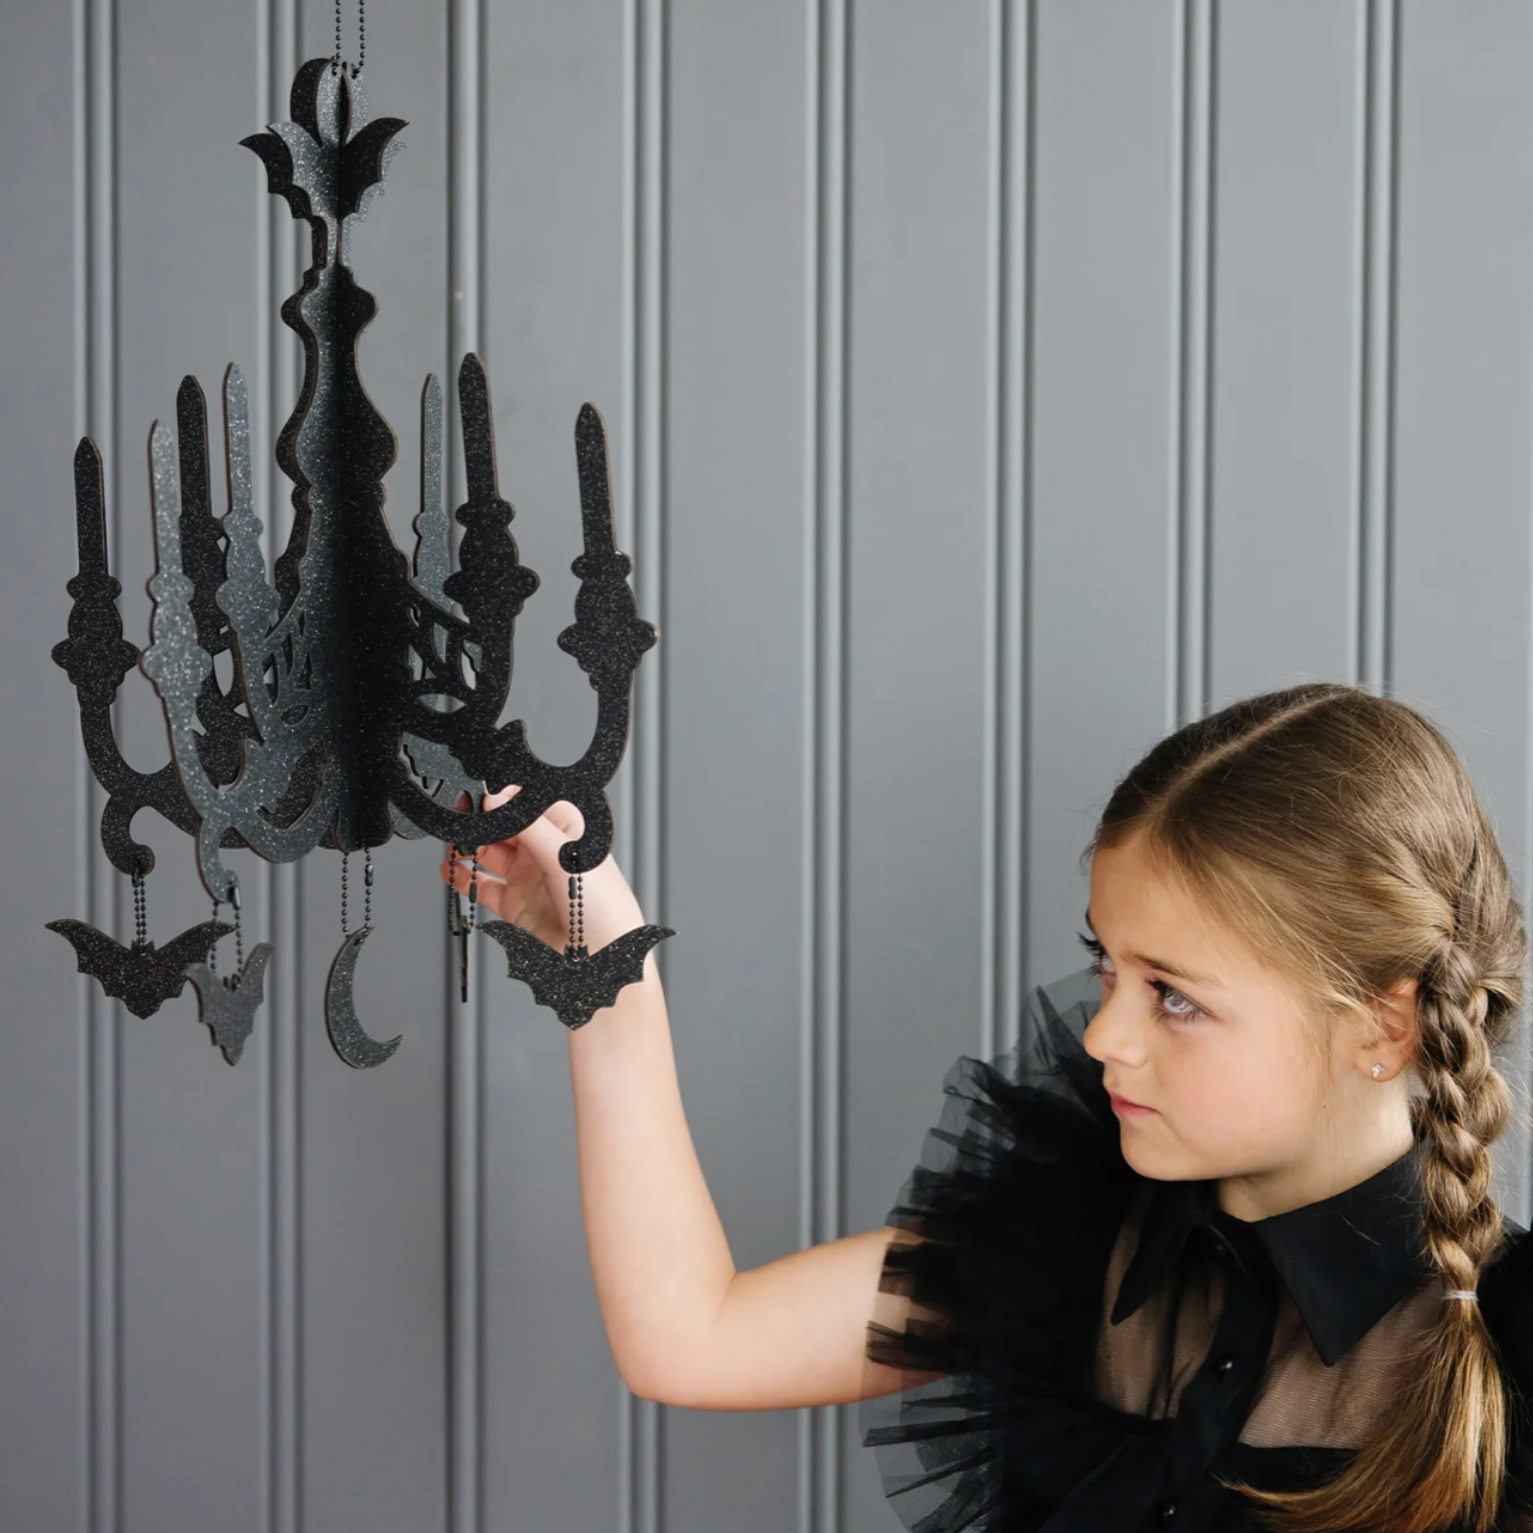 PRE-ORDER: Mystical Black Glittered Hanging Chandelier